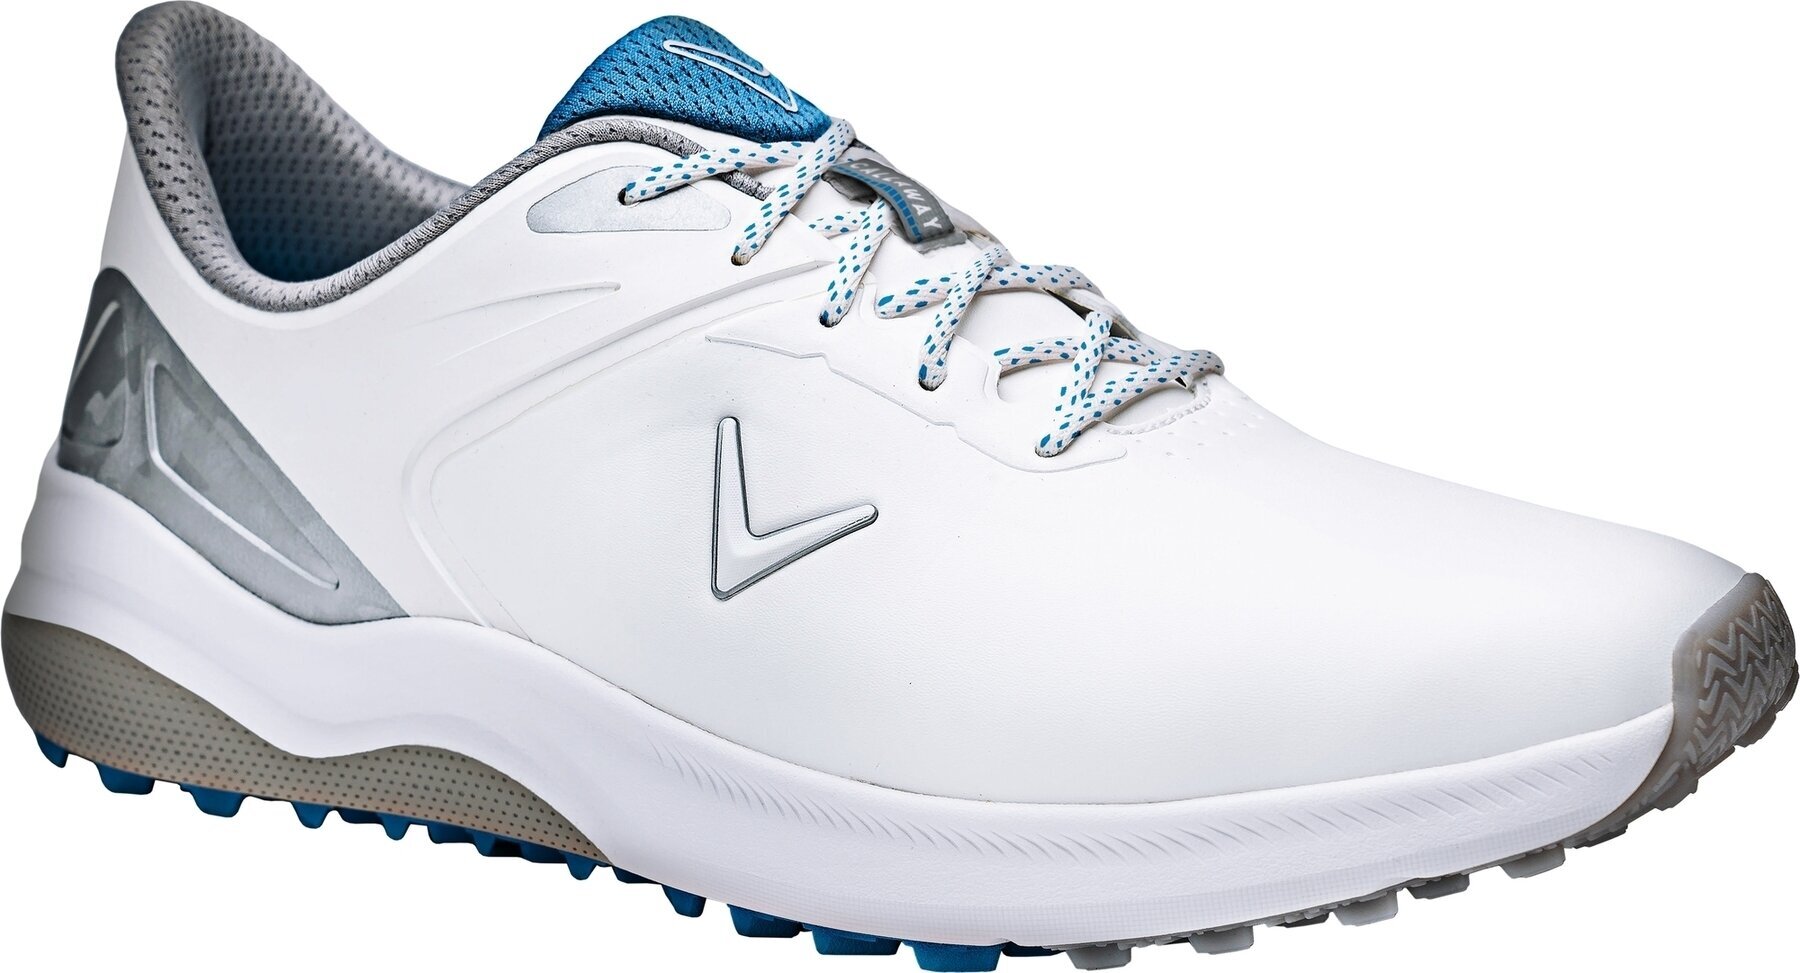 Golfsko til mænd Callaway Lazer Mens Golf Shoes White/Silver 42